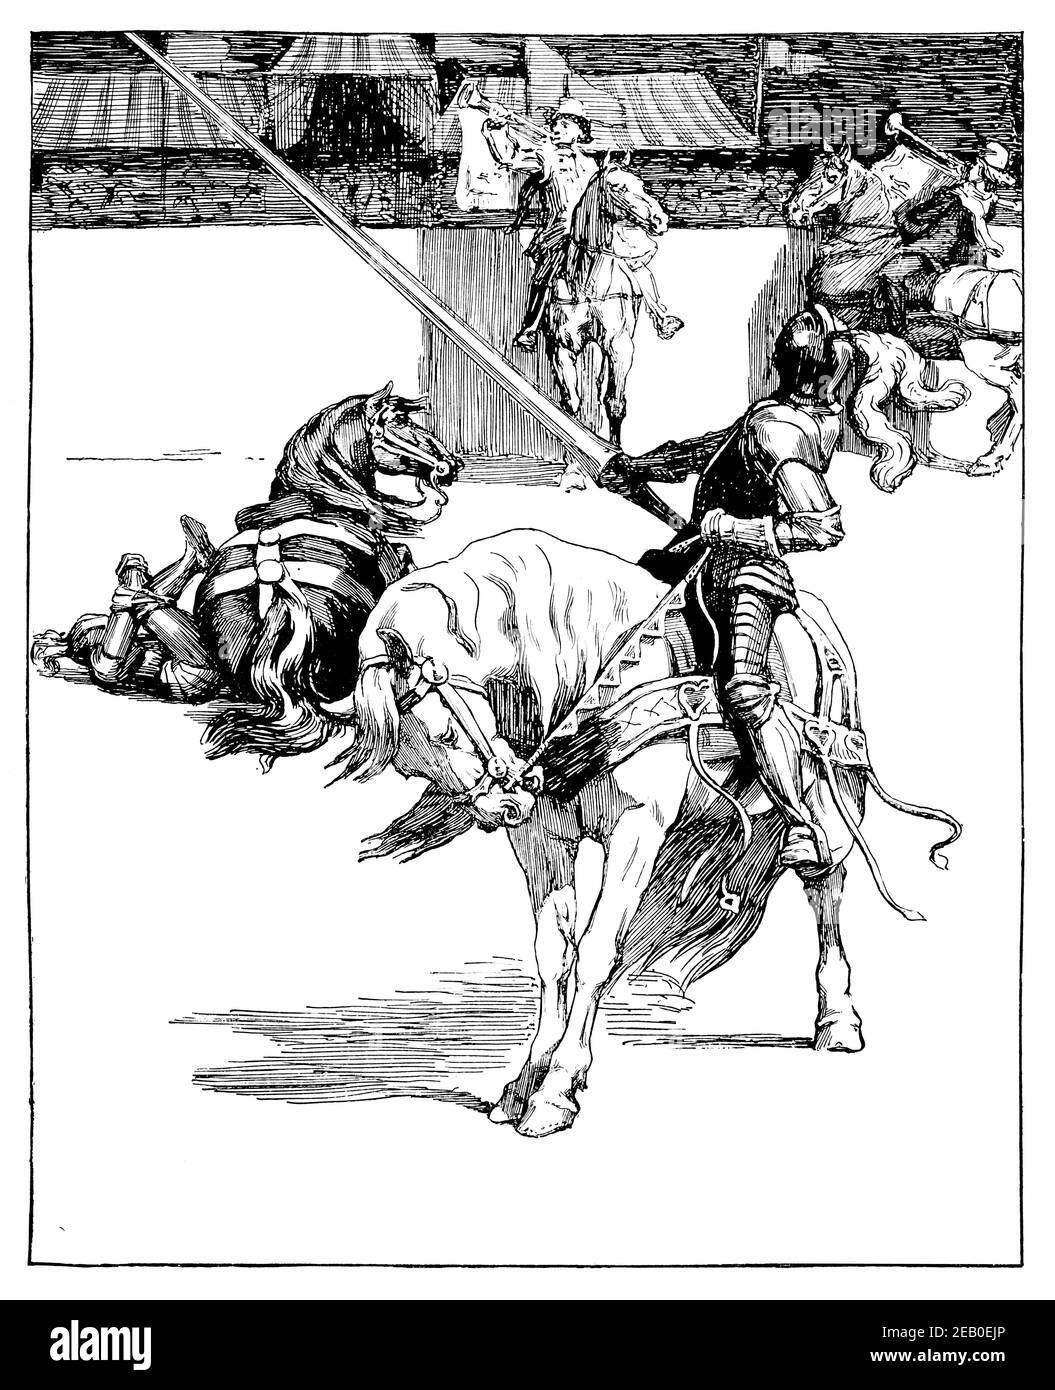 Illustrazione di Ivanhoe, cavalieri medievali che scagliano, illustrazione da Edwin Noble nel 1898 lo Studio An Illustrated Magazine of fine and Applied Art Foto Stock